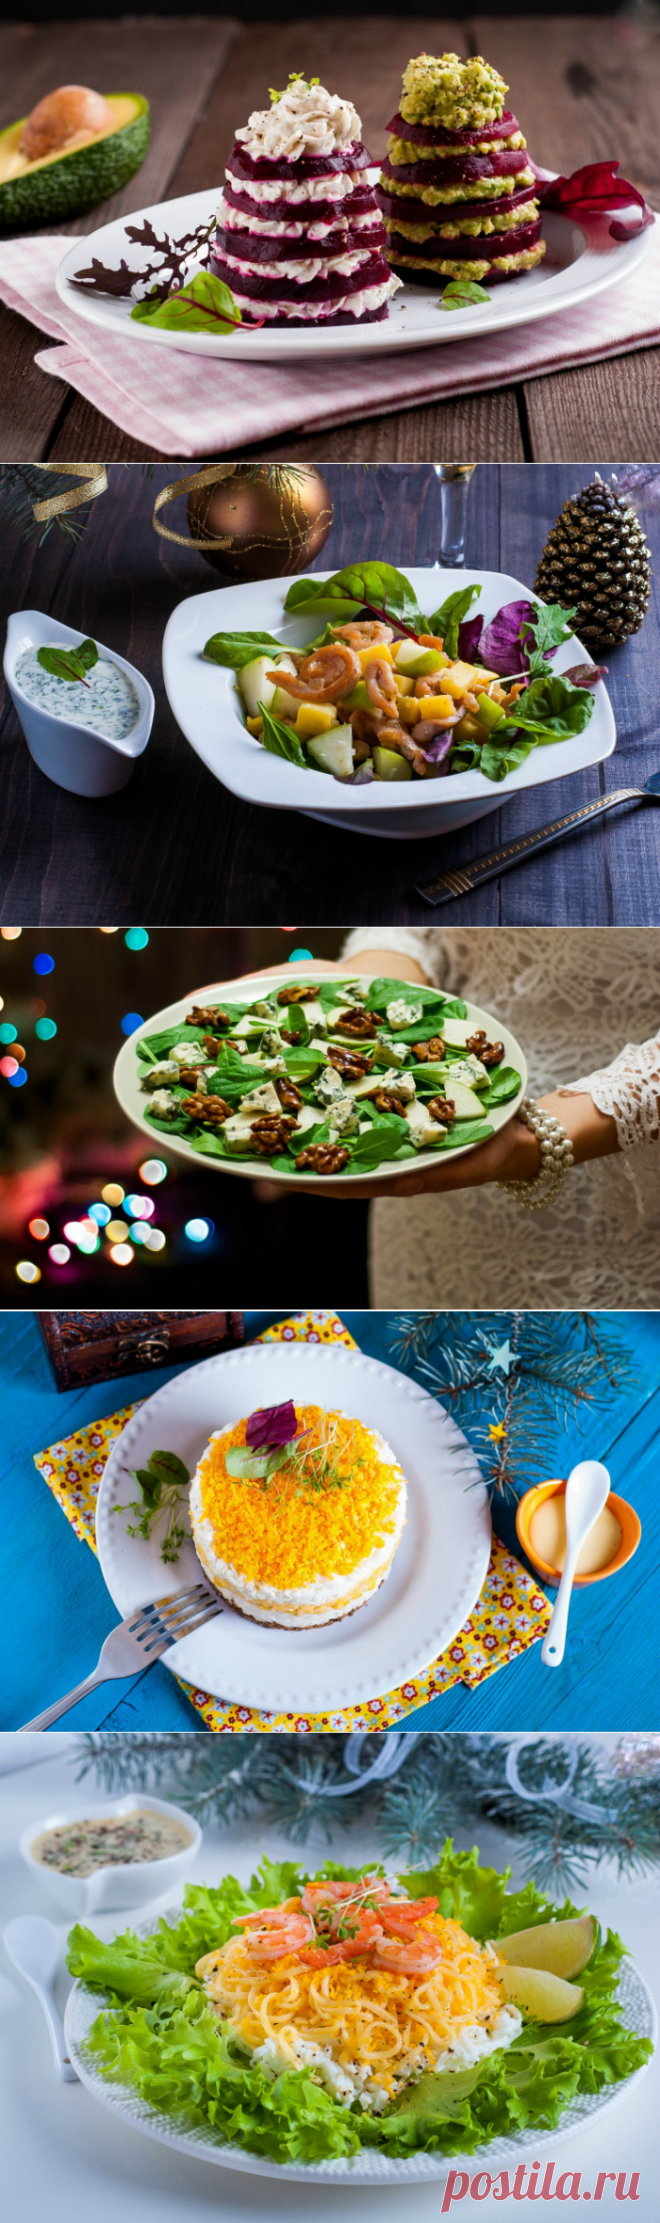 Вкус праздника: 5 простых салатов, которые выглядят как из ресторана